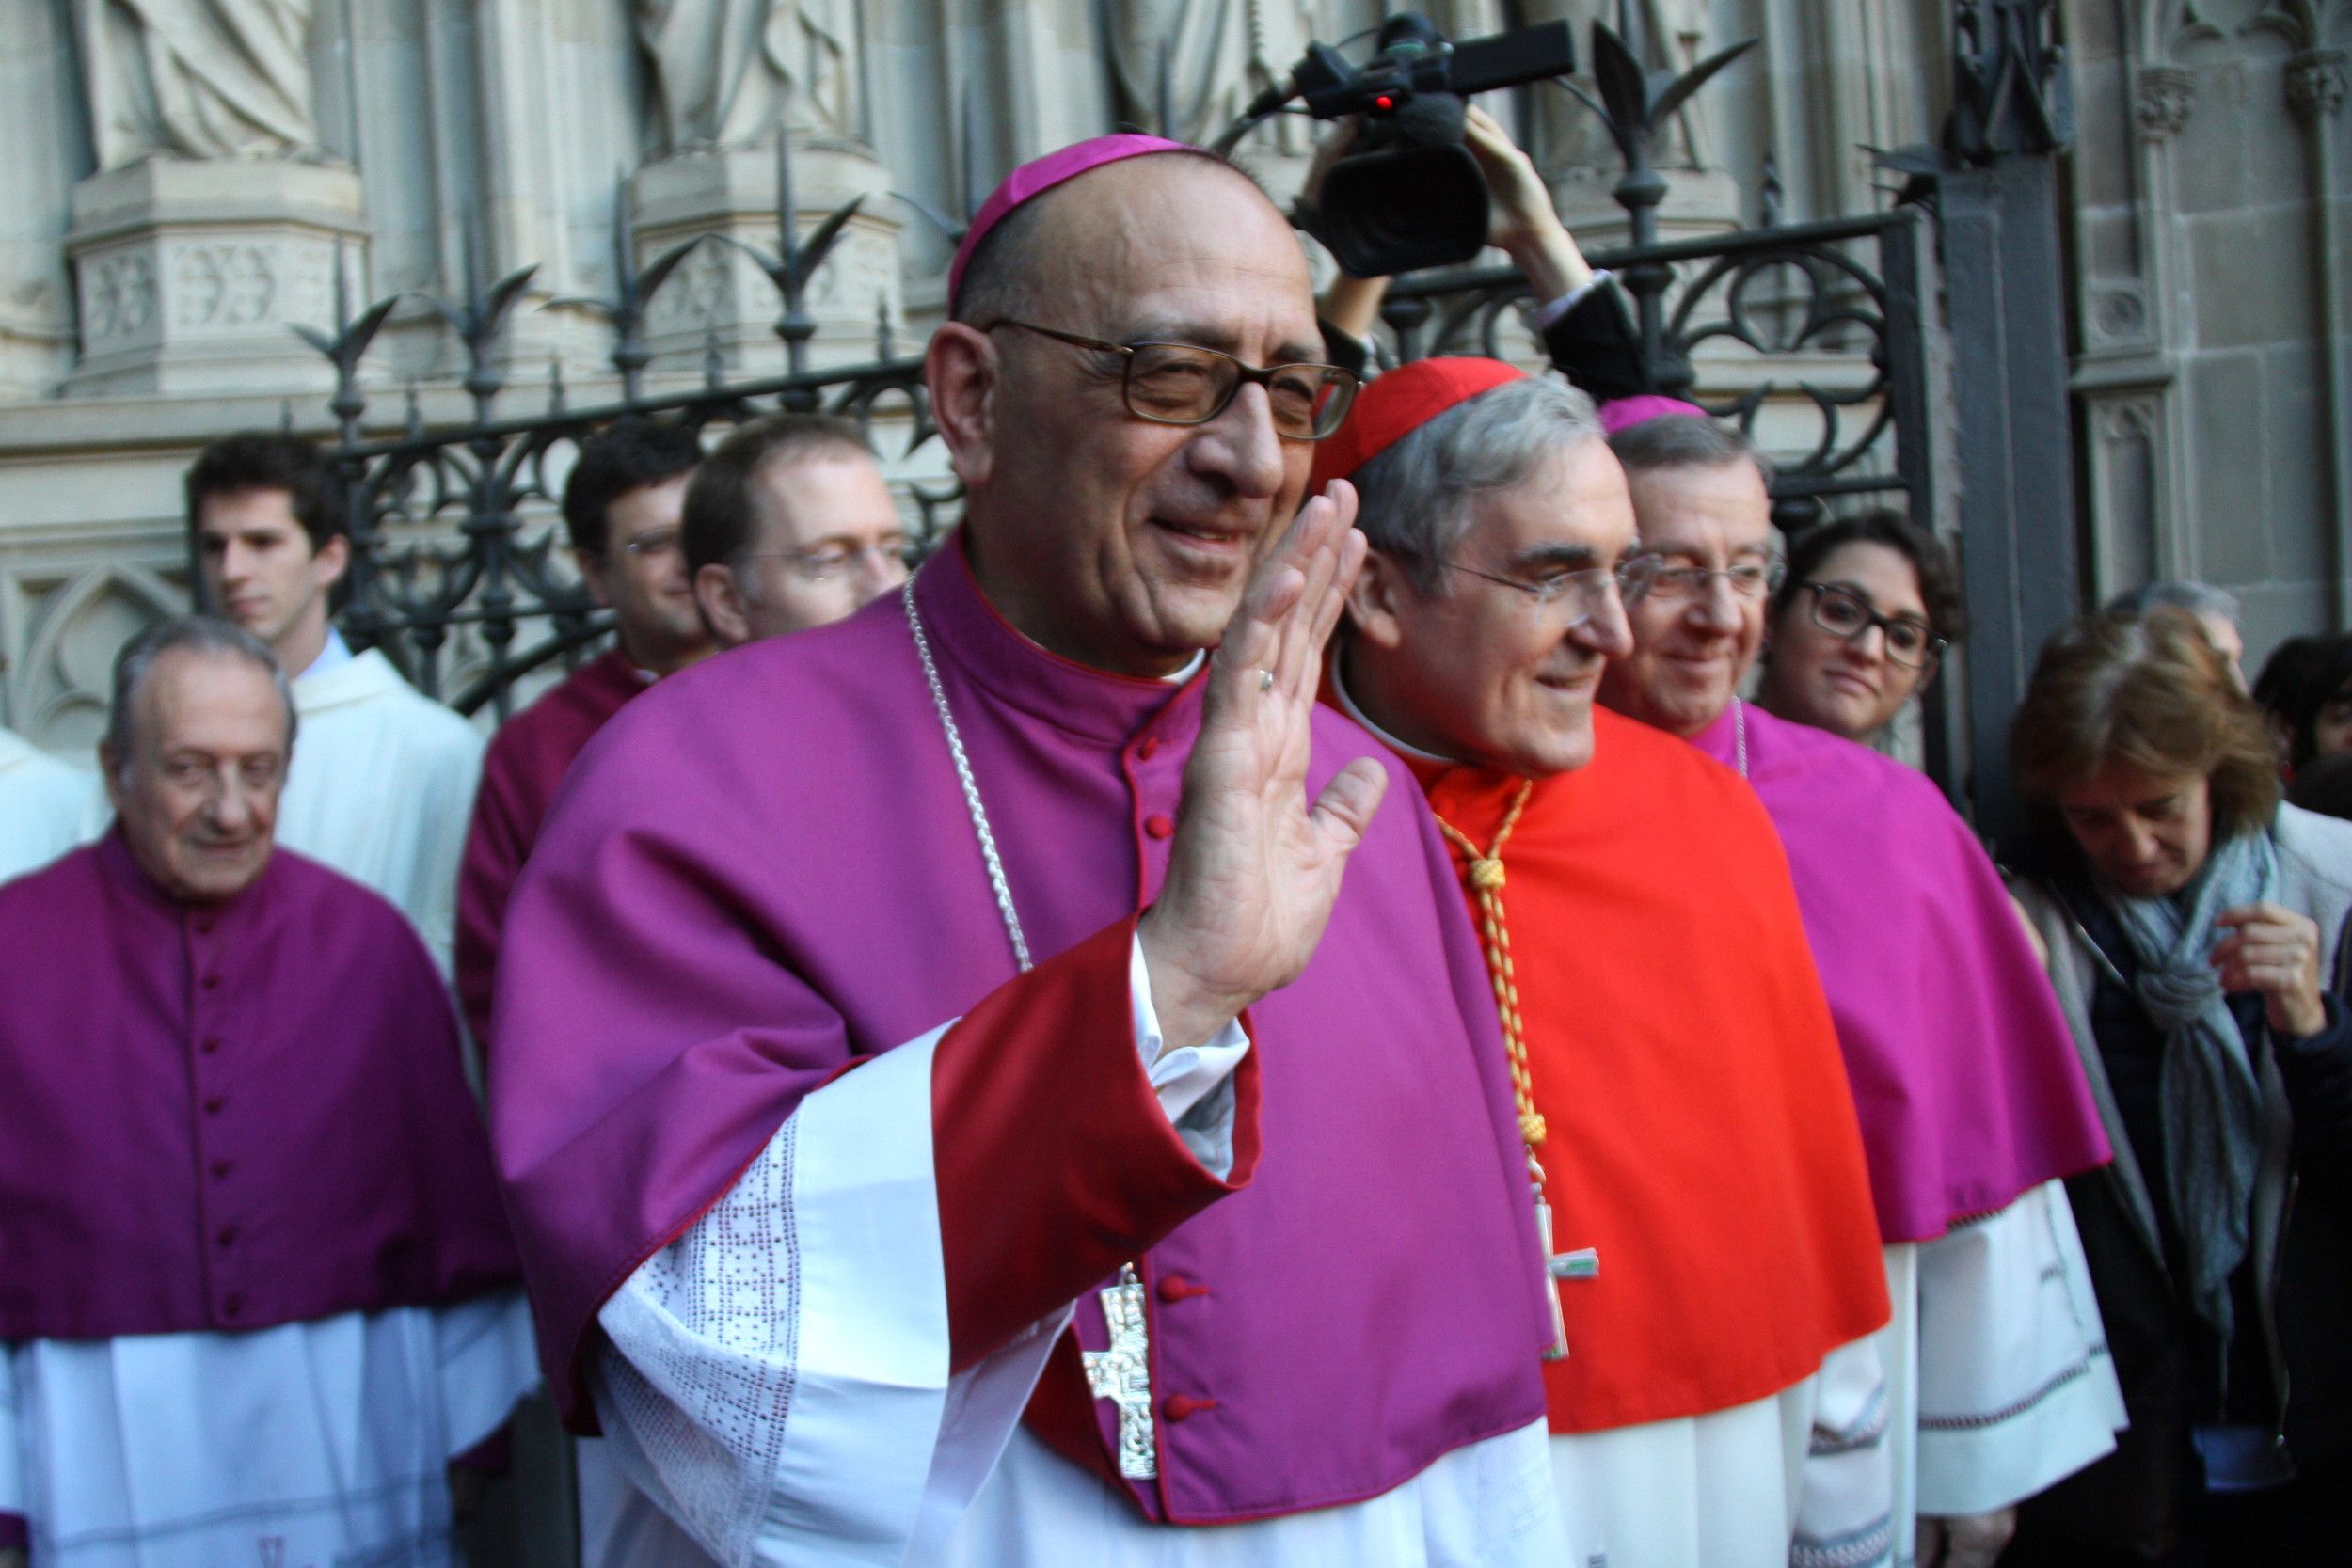 Omella lamenta els menyspreus a la Sagrada Família